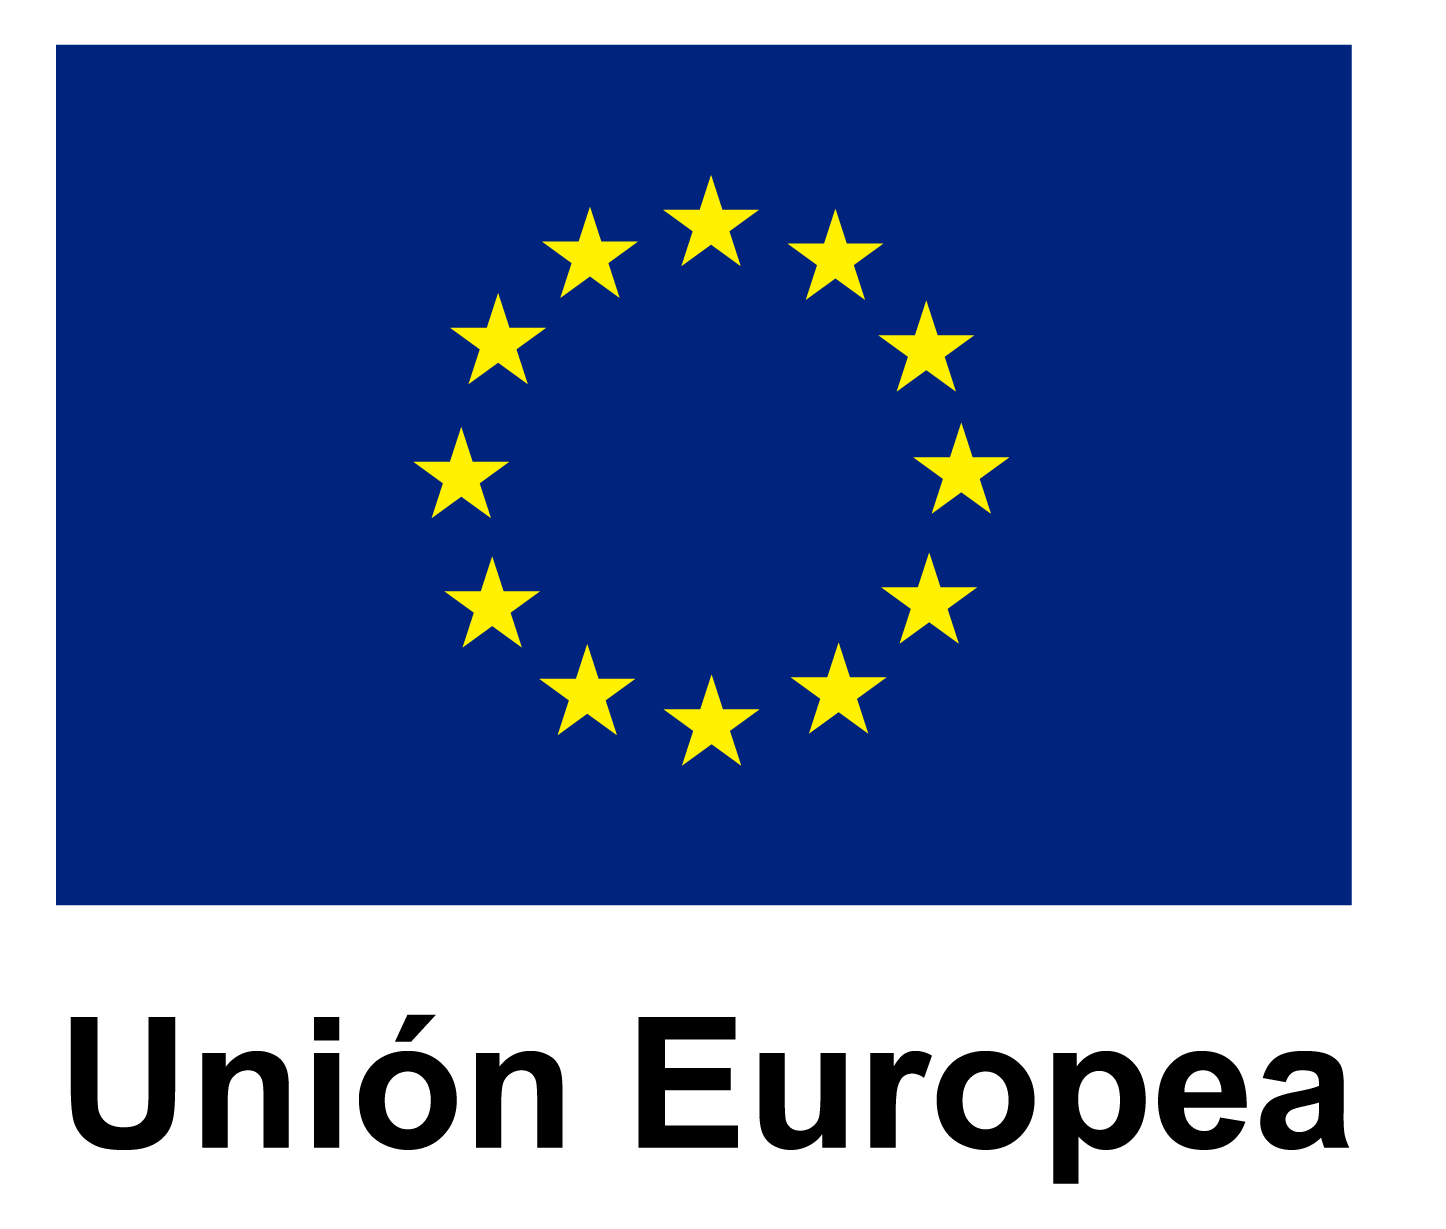 la bandera de la unión europea con estrellas amarillas en un círculo